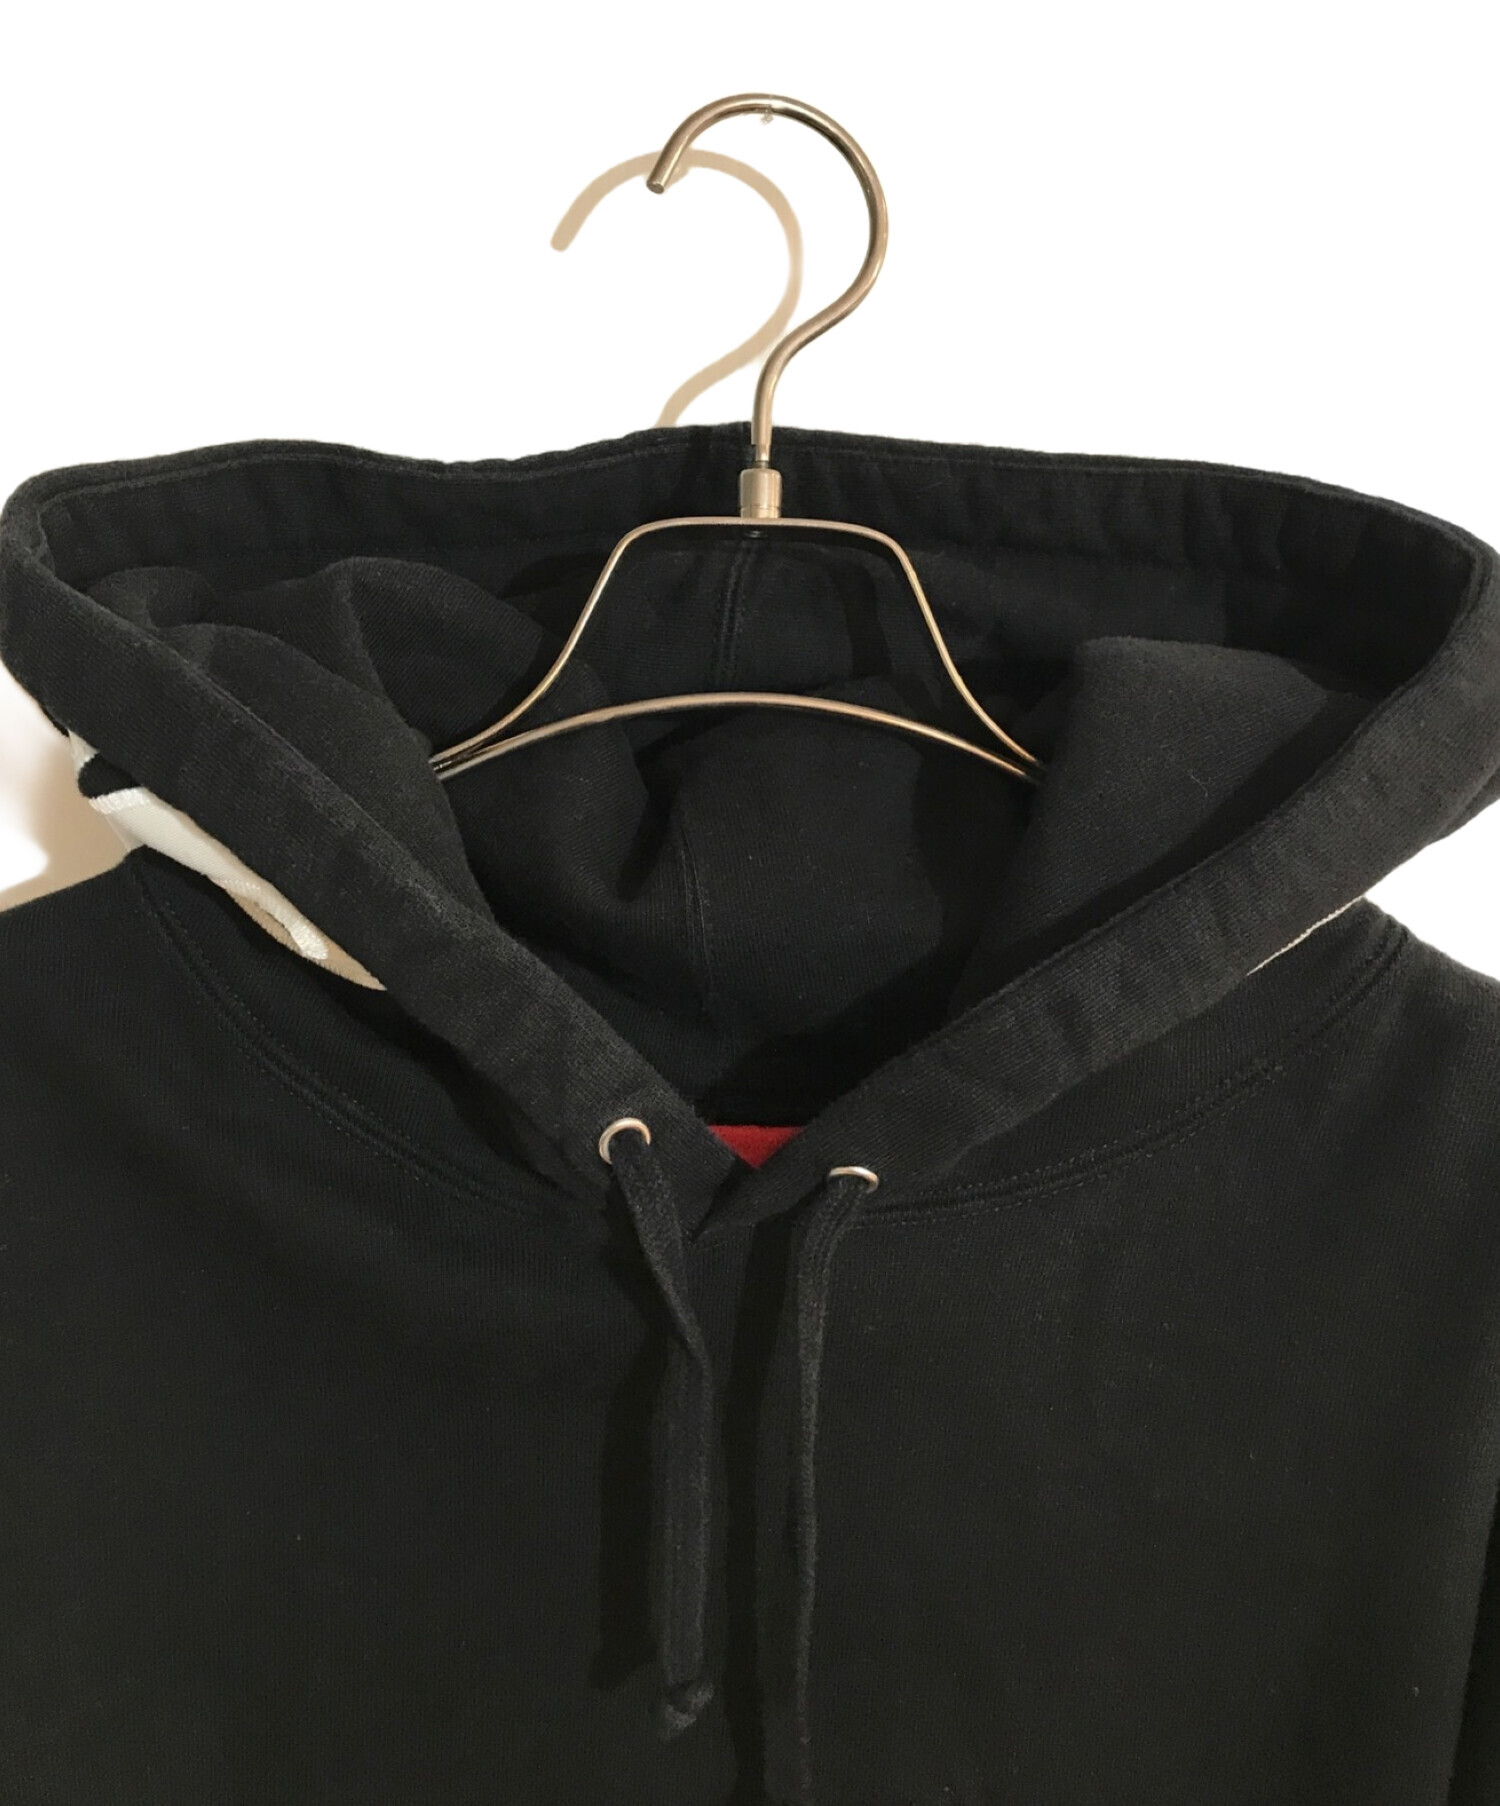 Supreme (シュプリーム) Contrast Hooded Sweatshirt/コントラストフーディースウェットシャツ ブラック  サイズ:SIZE XL